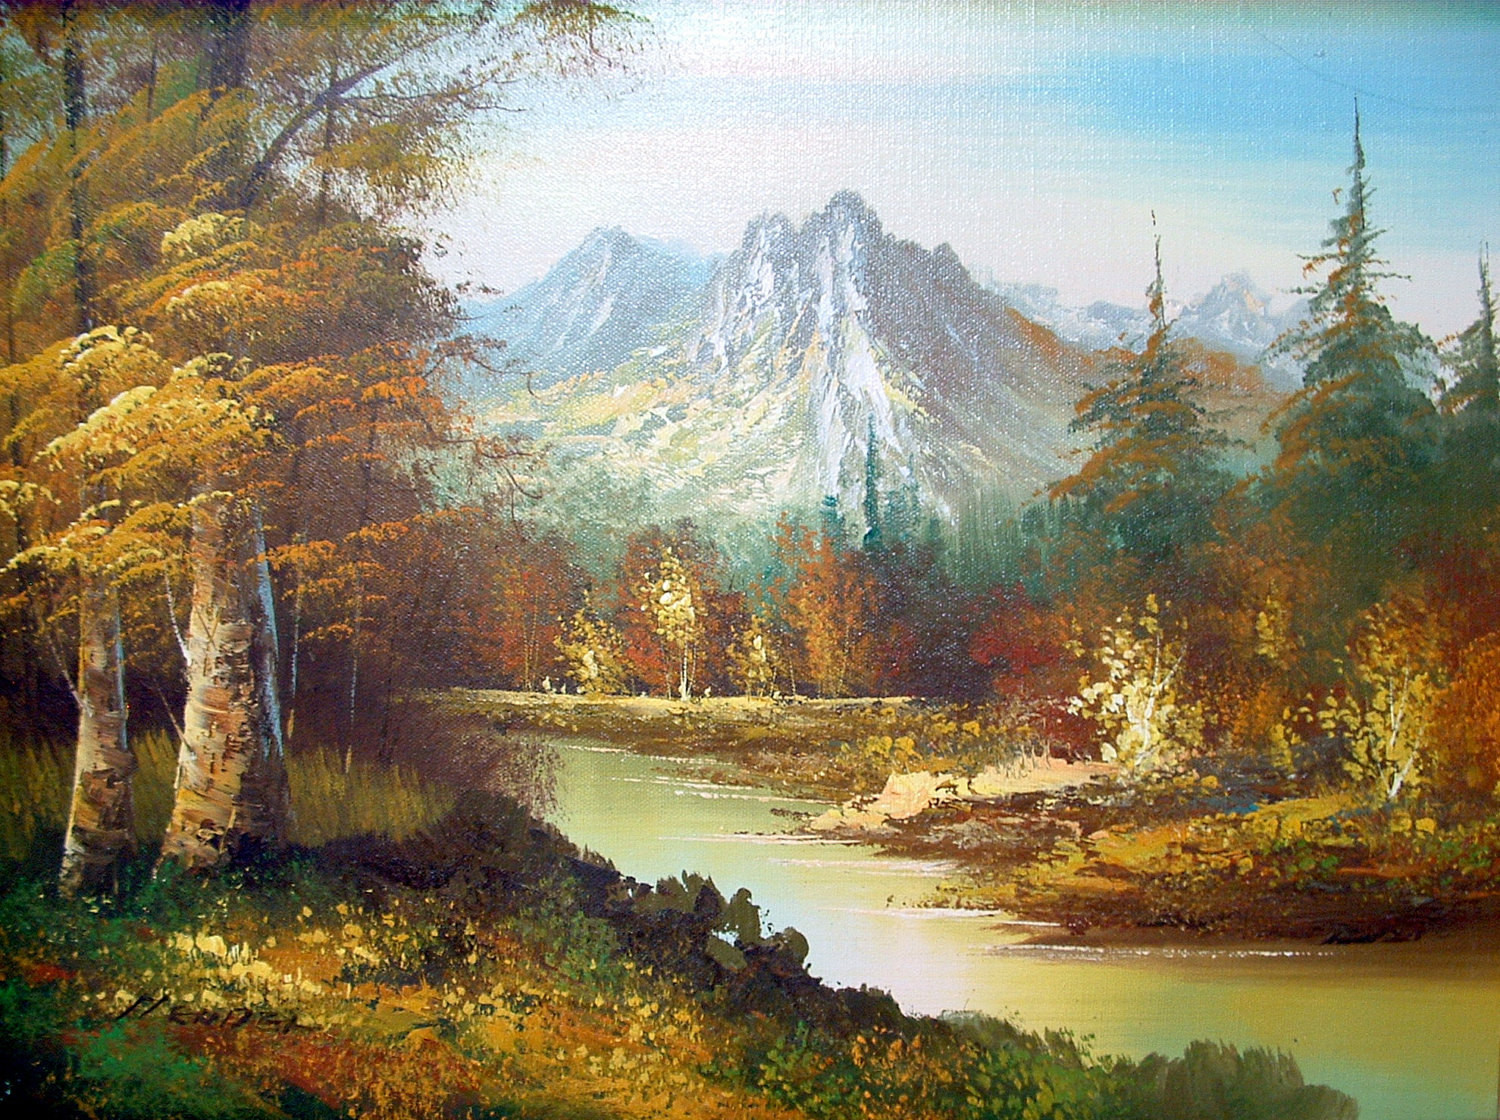 Best ideas about Landscape Oil Painting
. Save or Pin Vintage landscape oil painting by Hendel Now.